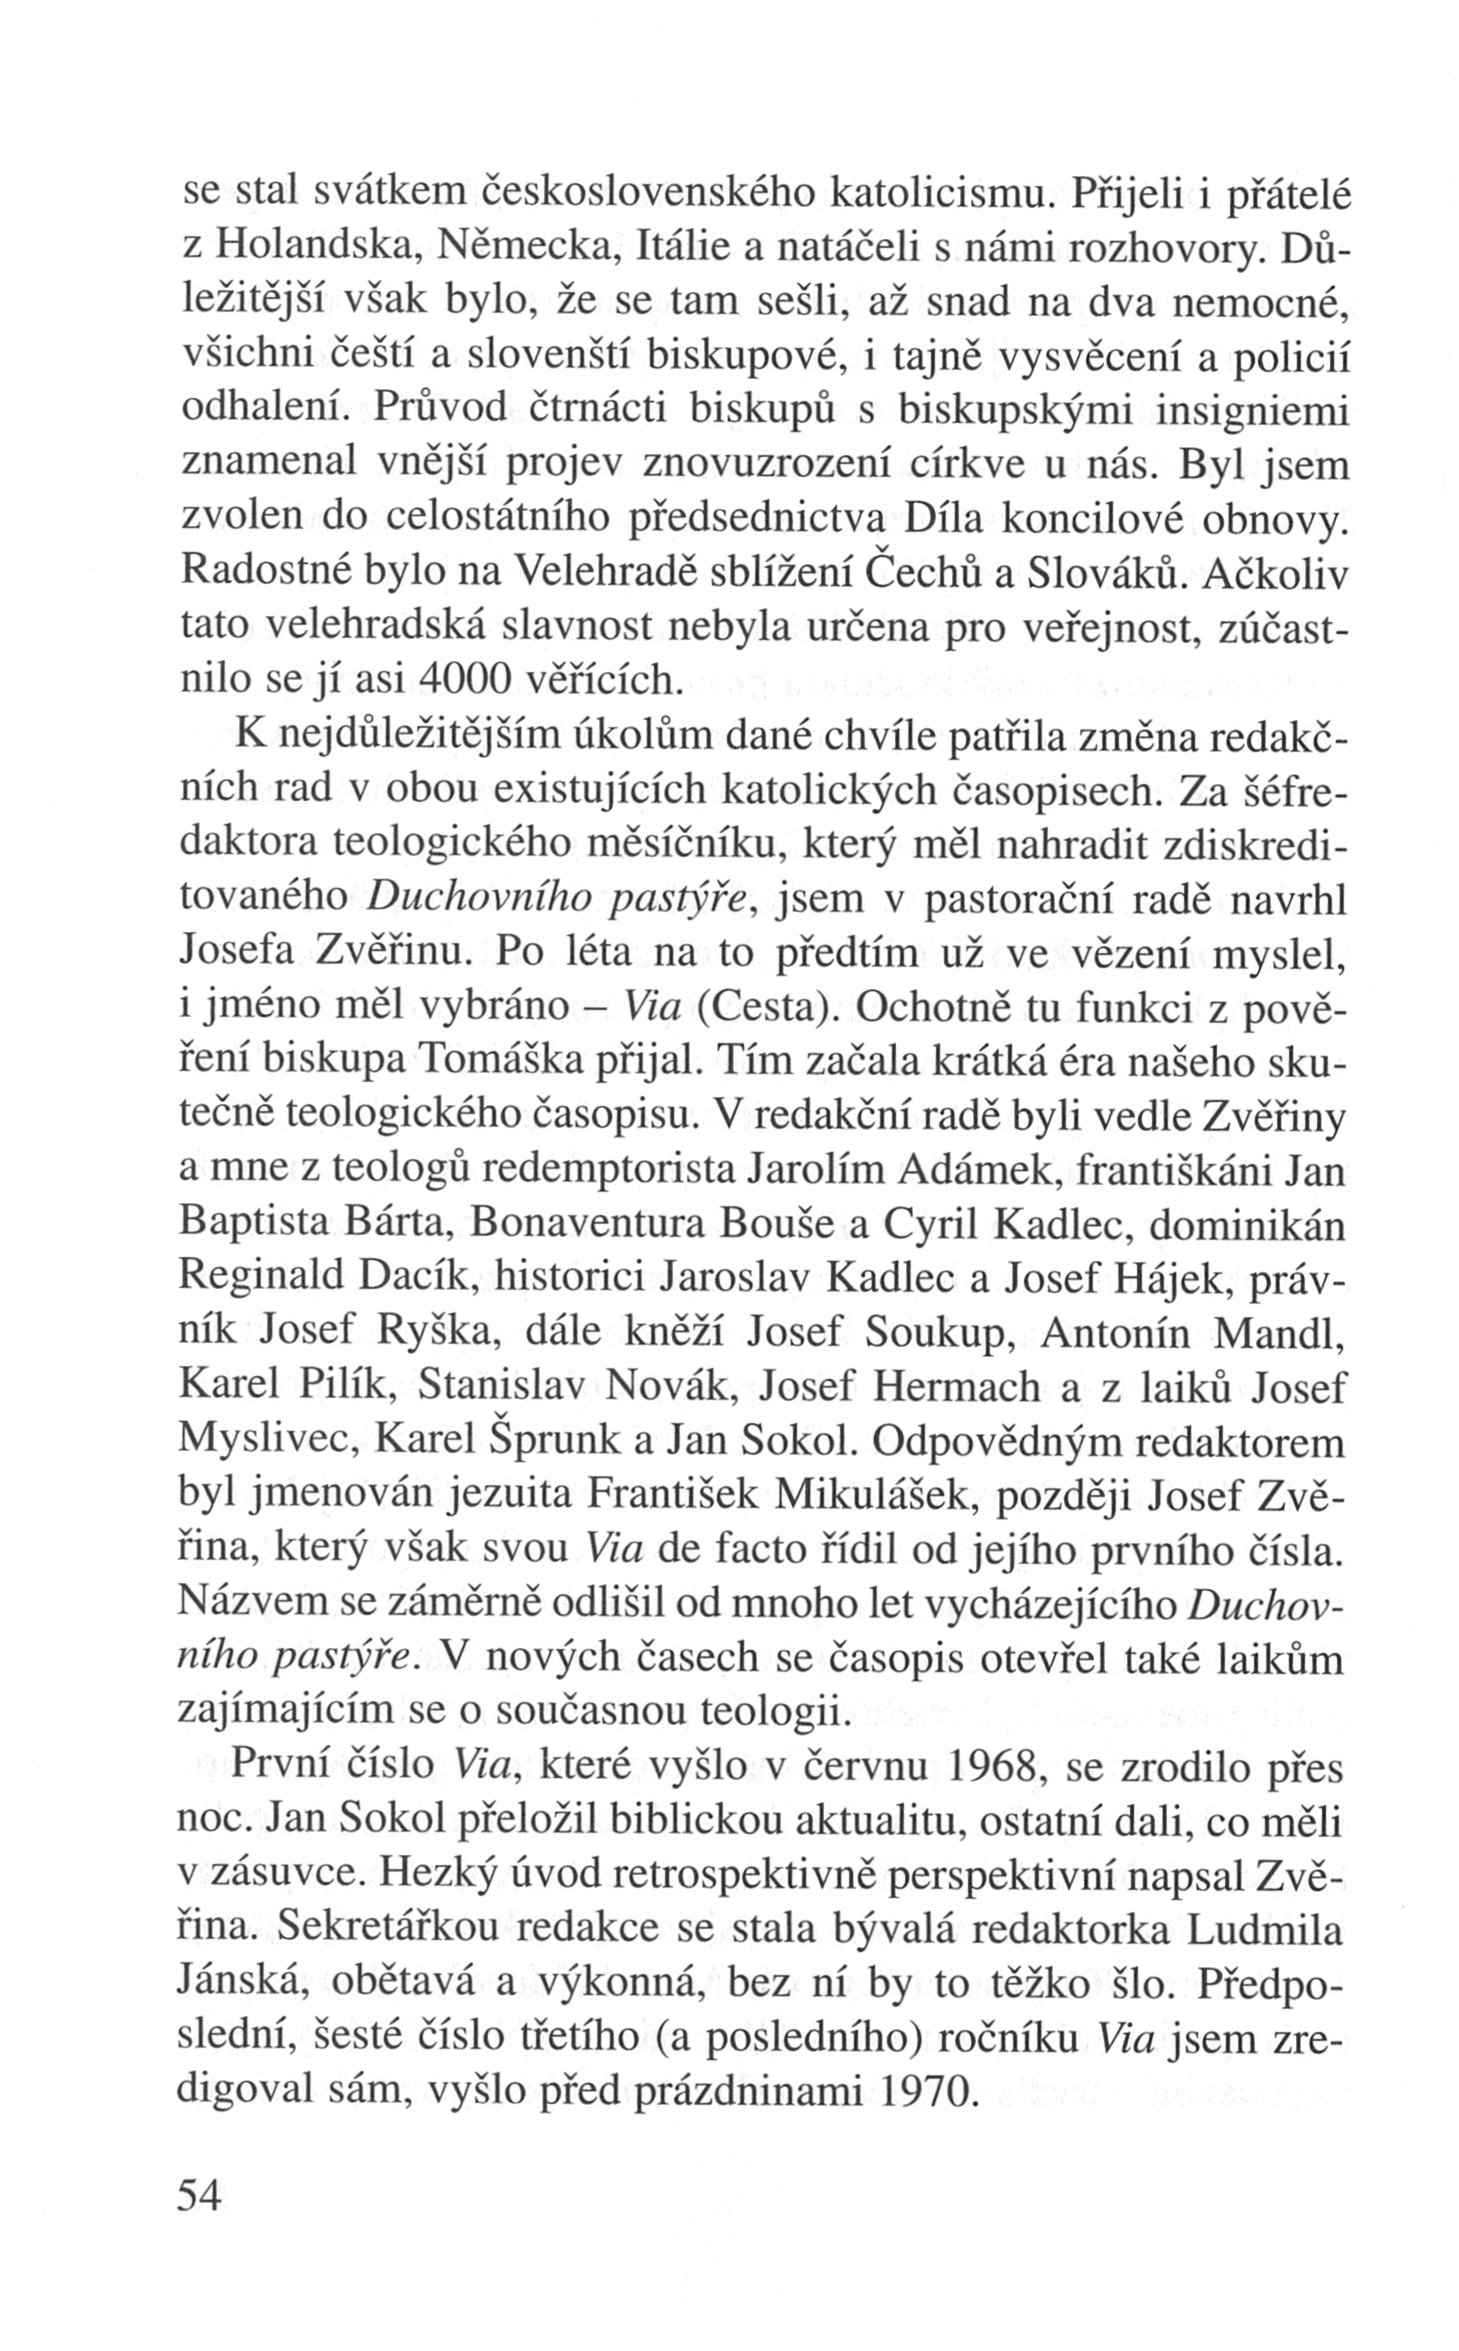 V zápasech za Boží věc / VZPOMÍNKY / Pražské jaro / strana 54